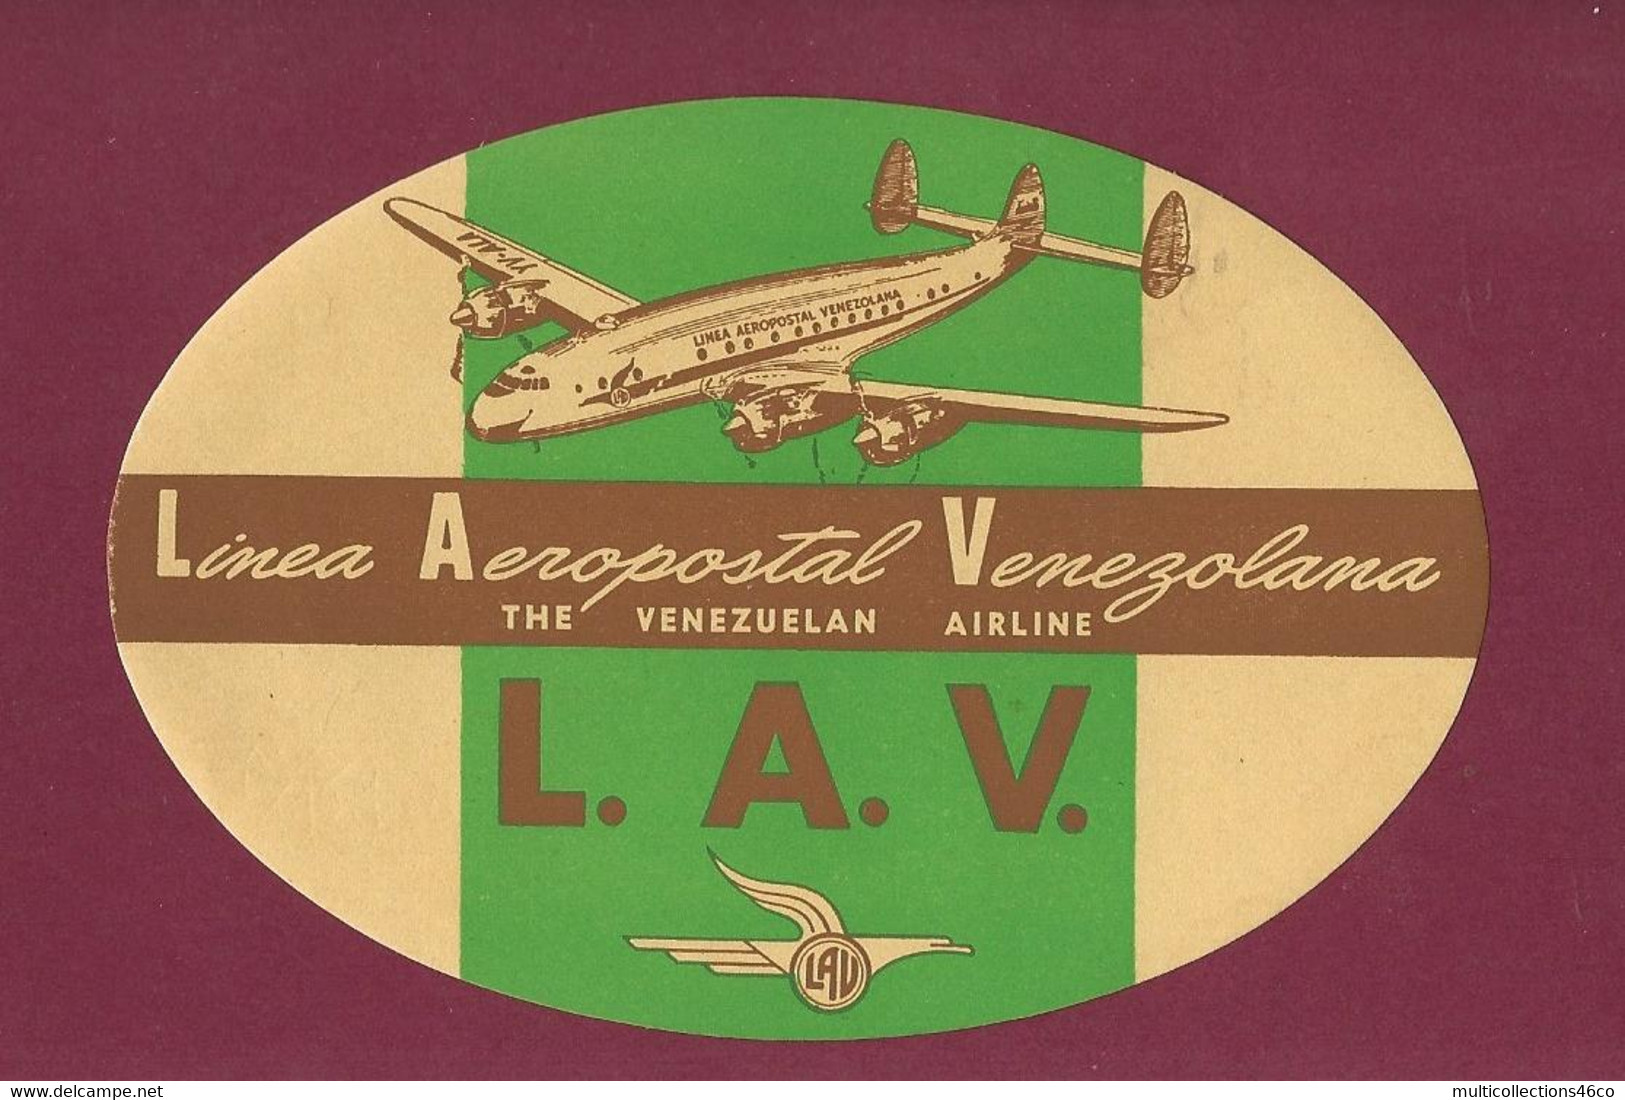 060922 - AVIATION ETIQUETTE A BAGAGE LAV Linea Aeropostal Venezolana THE VENEZUELAN AIRLINE Avion - Etichette Da Viaggio E Targhette